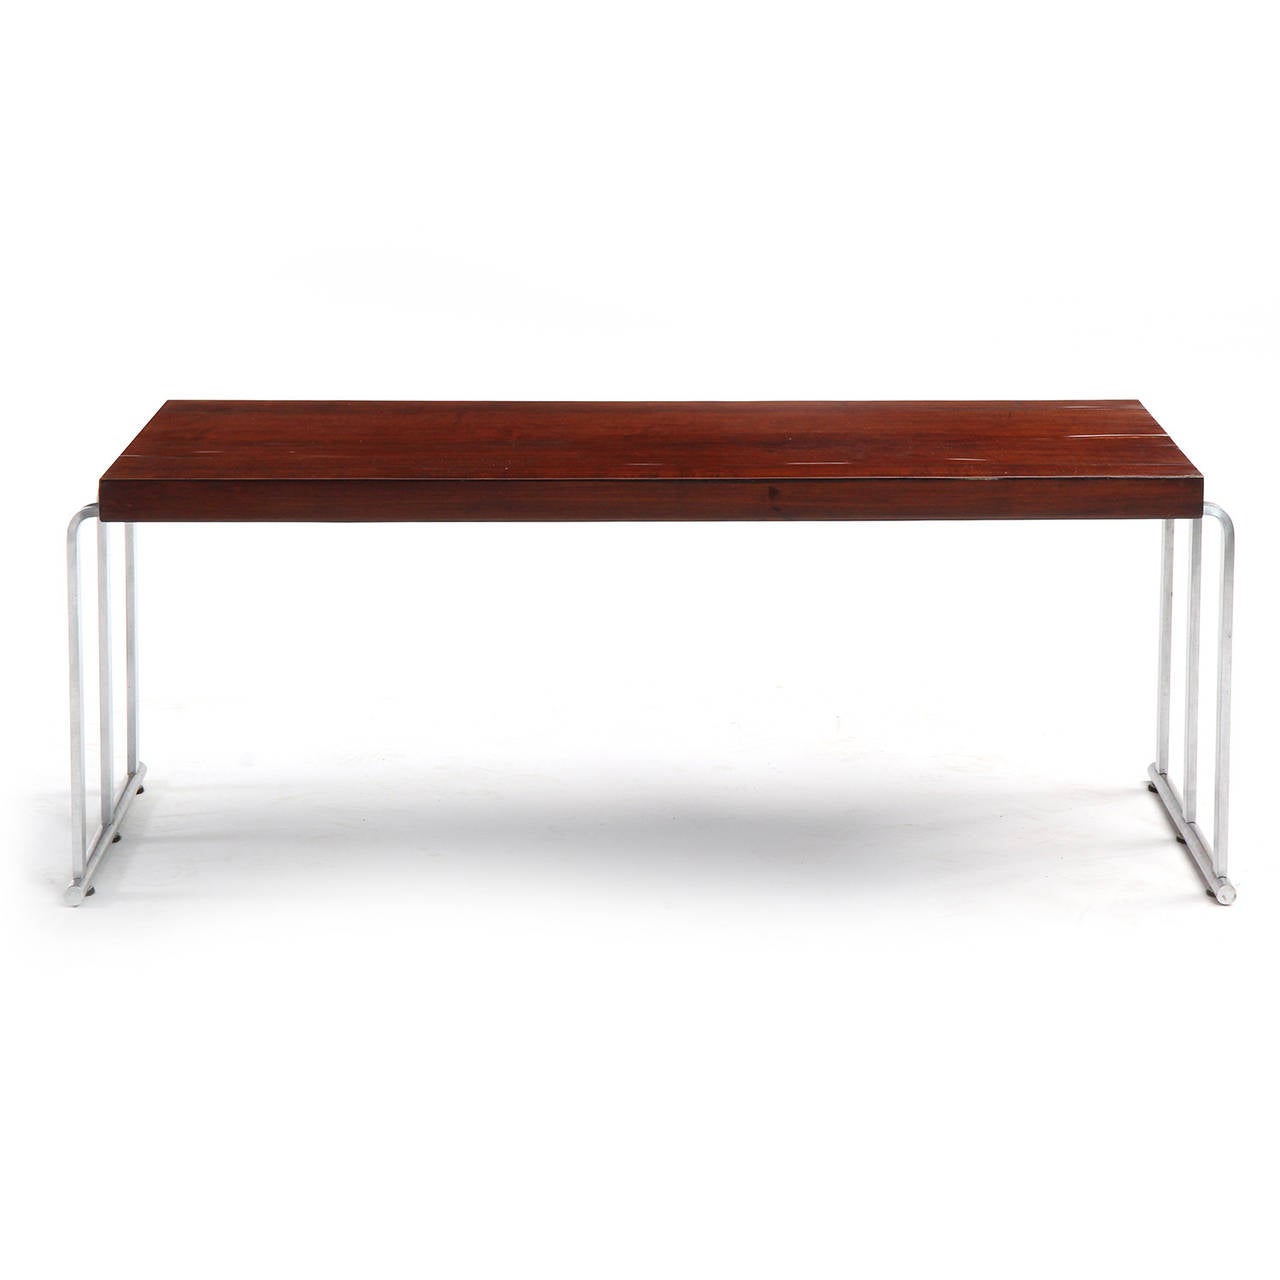 Ein niedriger Tisch oder eine Bank mit einer rechteckigen Mahagoniplatte, die auf einem gebogenen verchromten Stahlsockel mit Kufenfüßen schwebt.